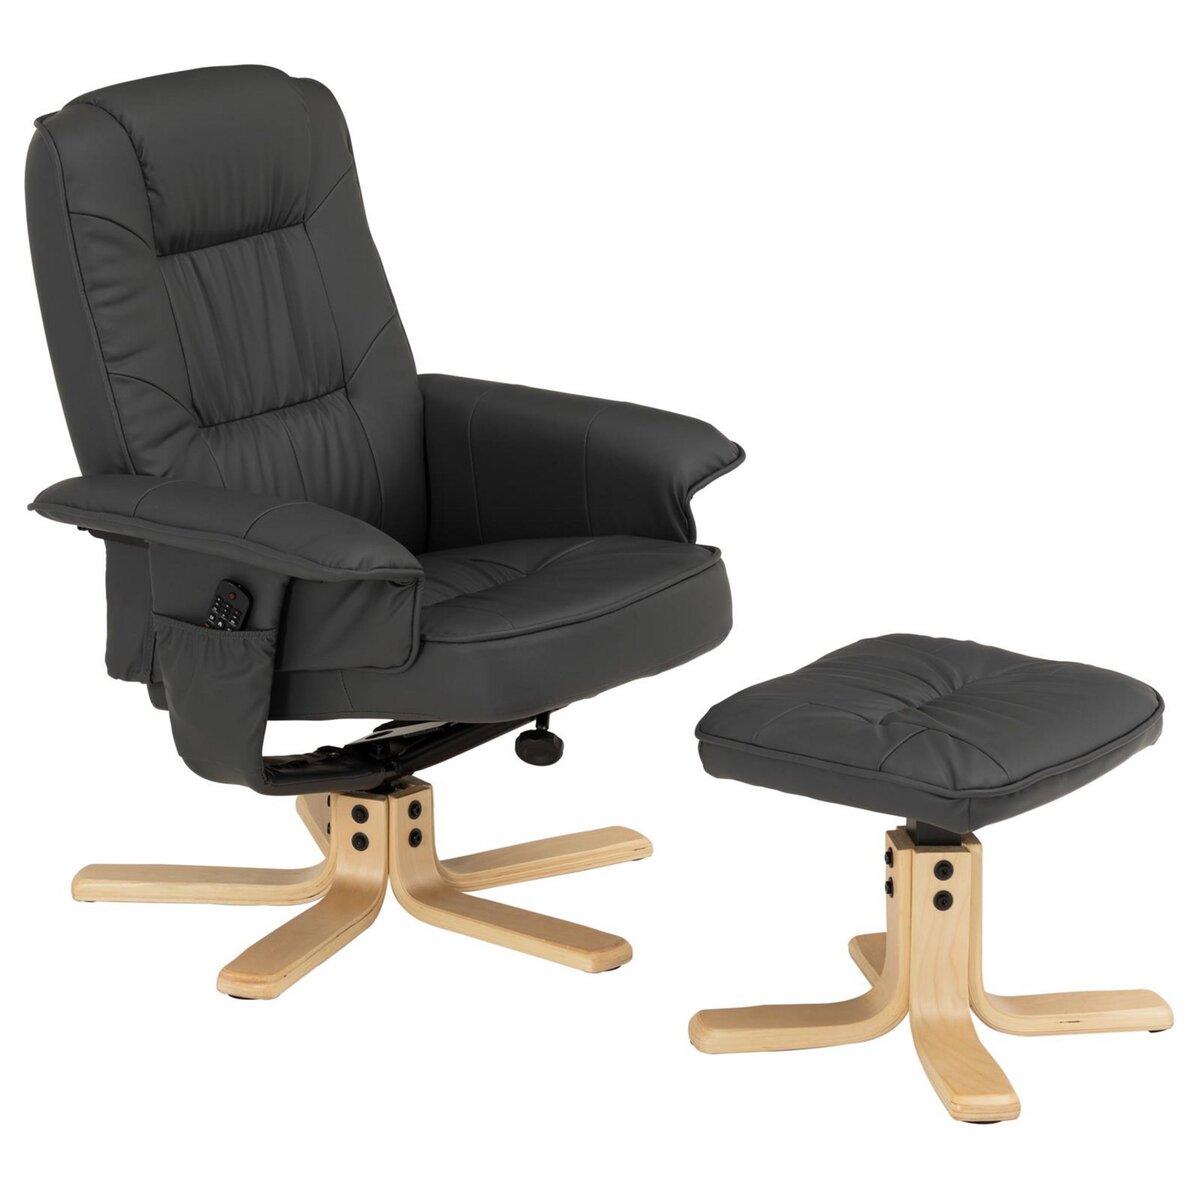 IDIMEX Fauteuil de relaxation CHARLY avec repose-pieds pouf siège pivotant dossier inclinable assise rembourrée relax, en synthétique gris